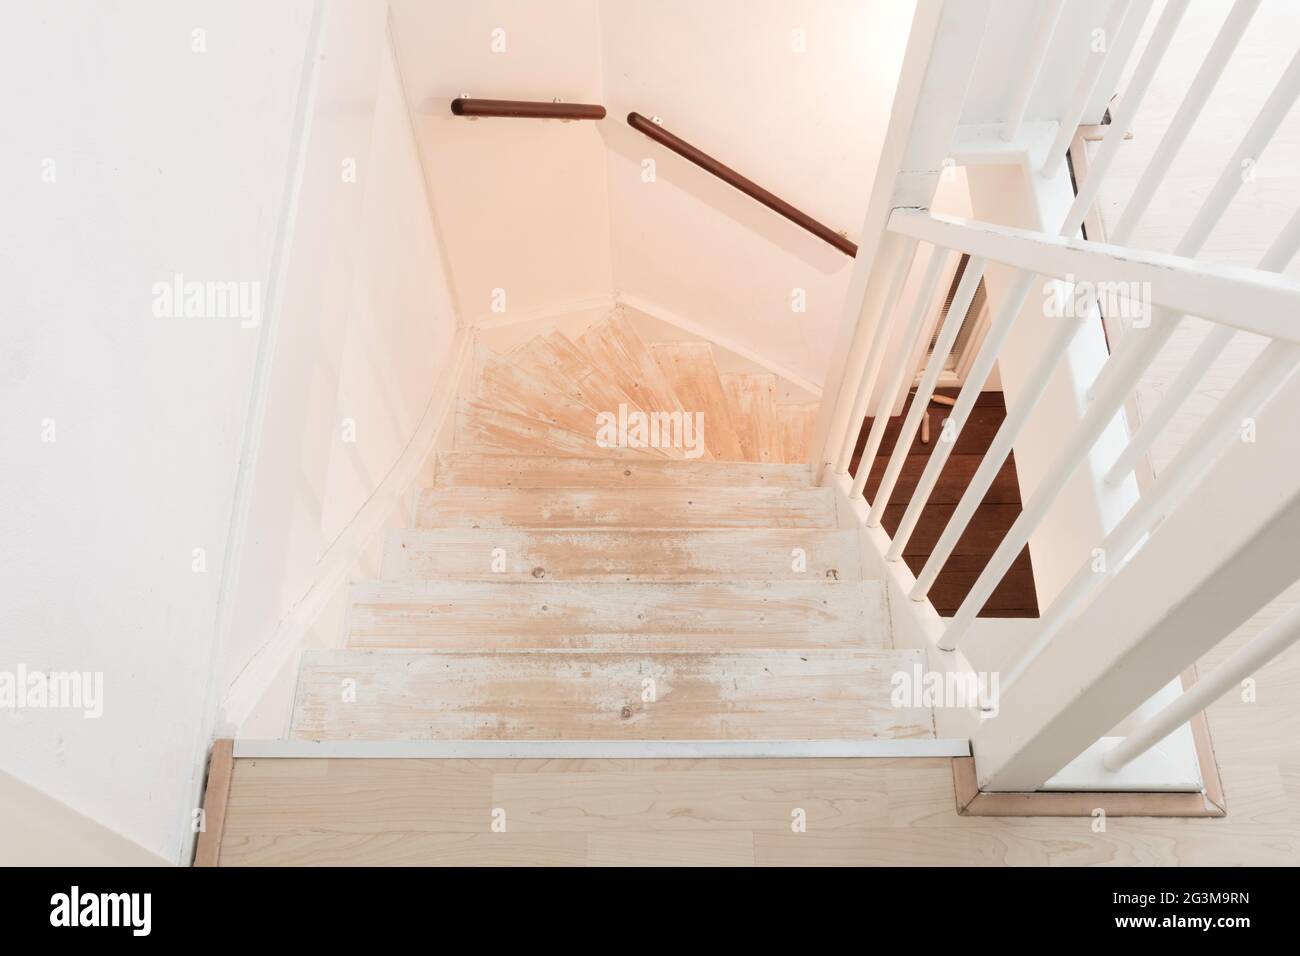 Entfernen von Teppich, Klebstoff und Farbe von einer alten Treppe  Stockfotografie - Alamy